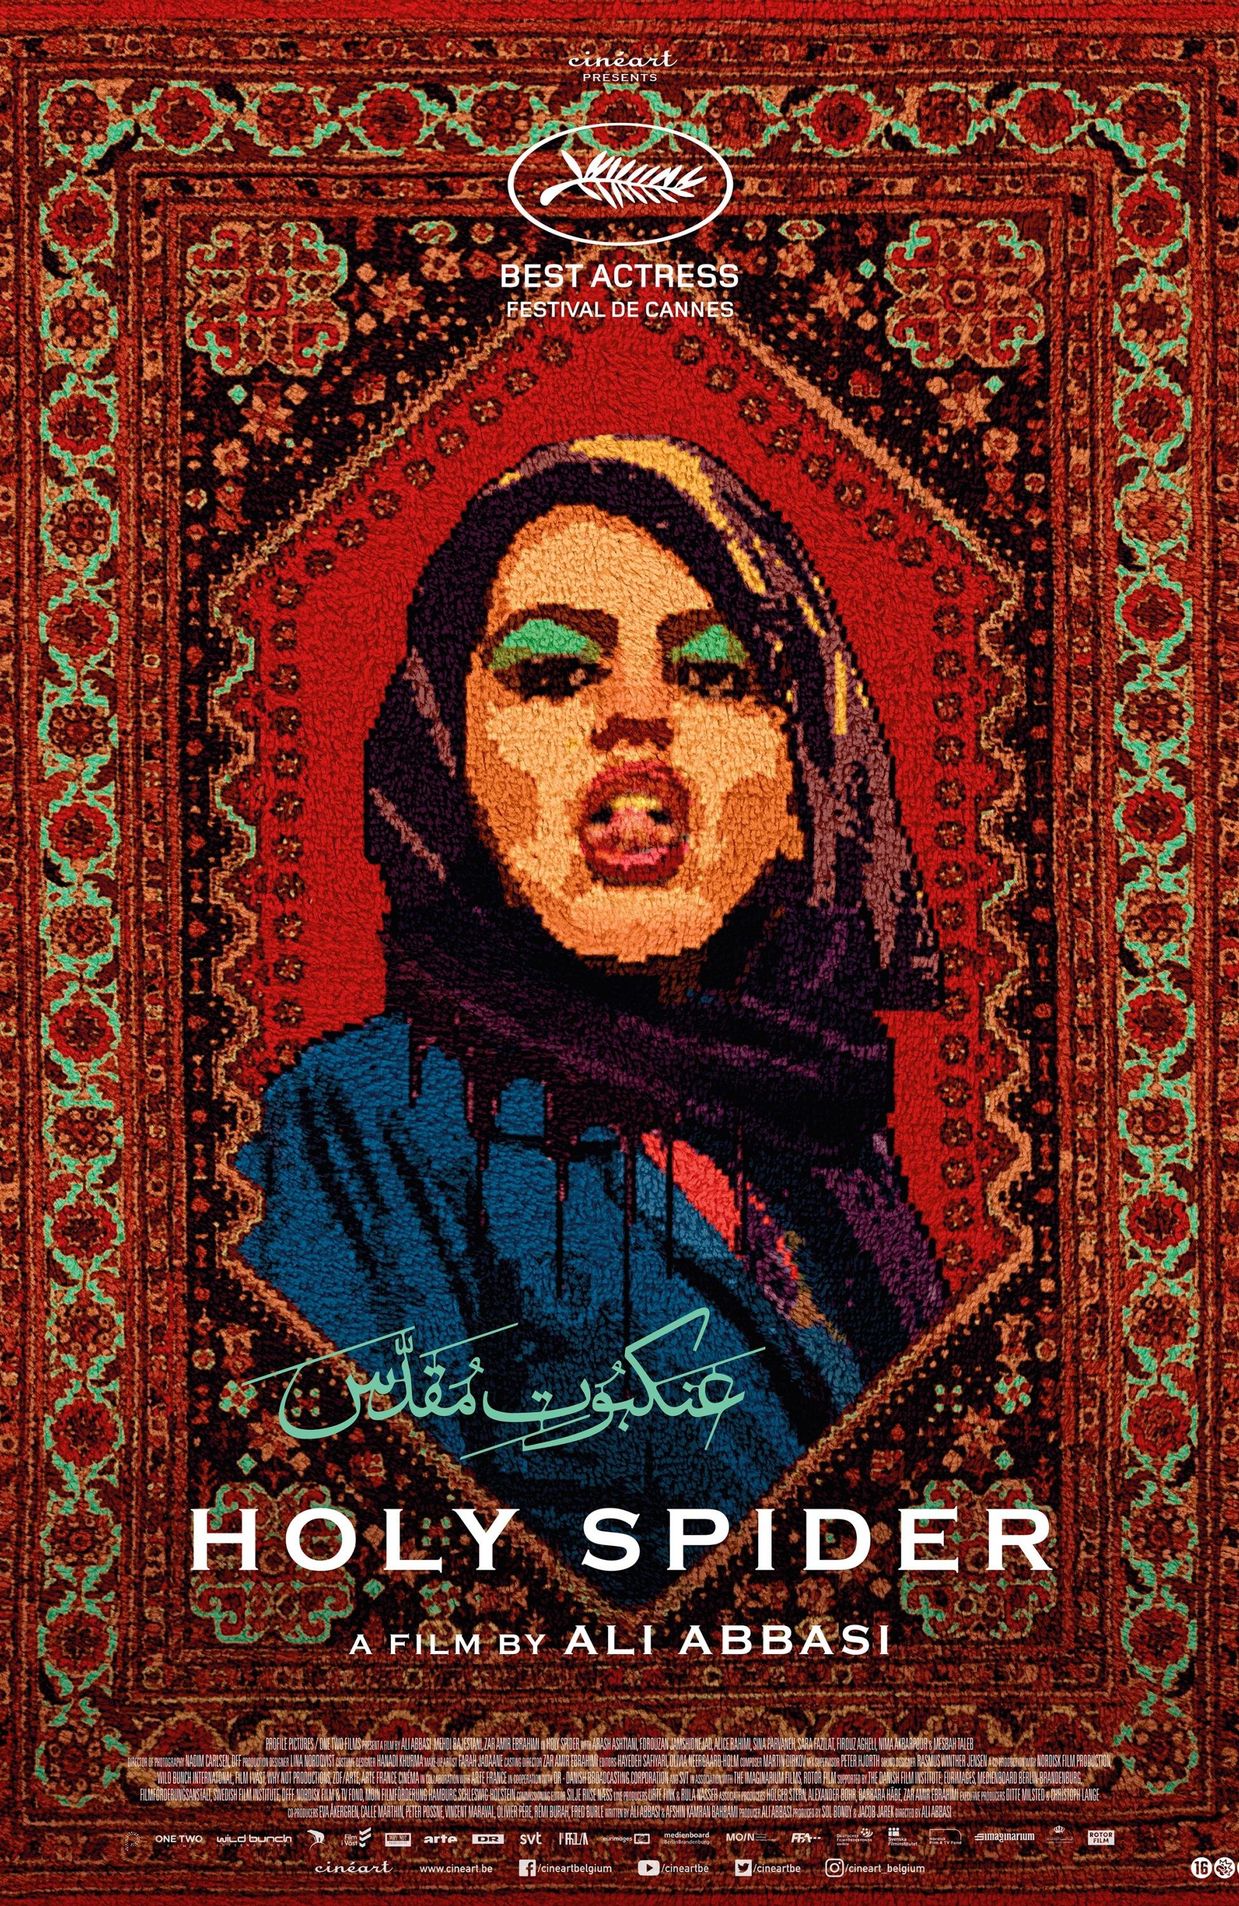 L'affiche de "Holy spider"